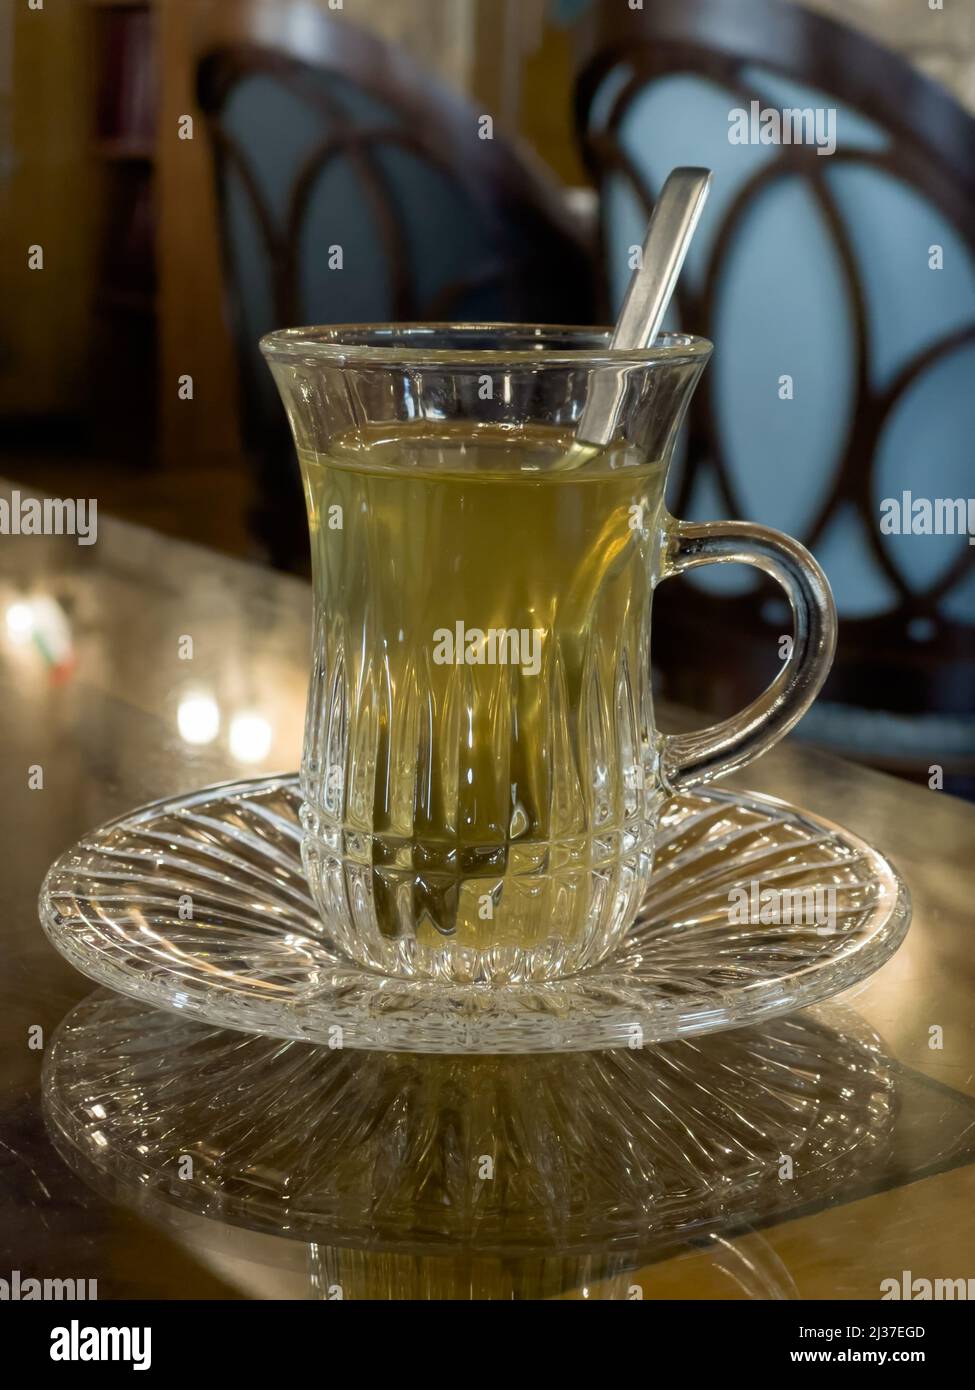 Gros plan d'une tasse de thé marocain servie sur la table. Mise au point sélective sur la tasse. Banque D'Images